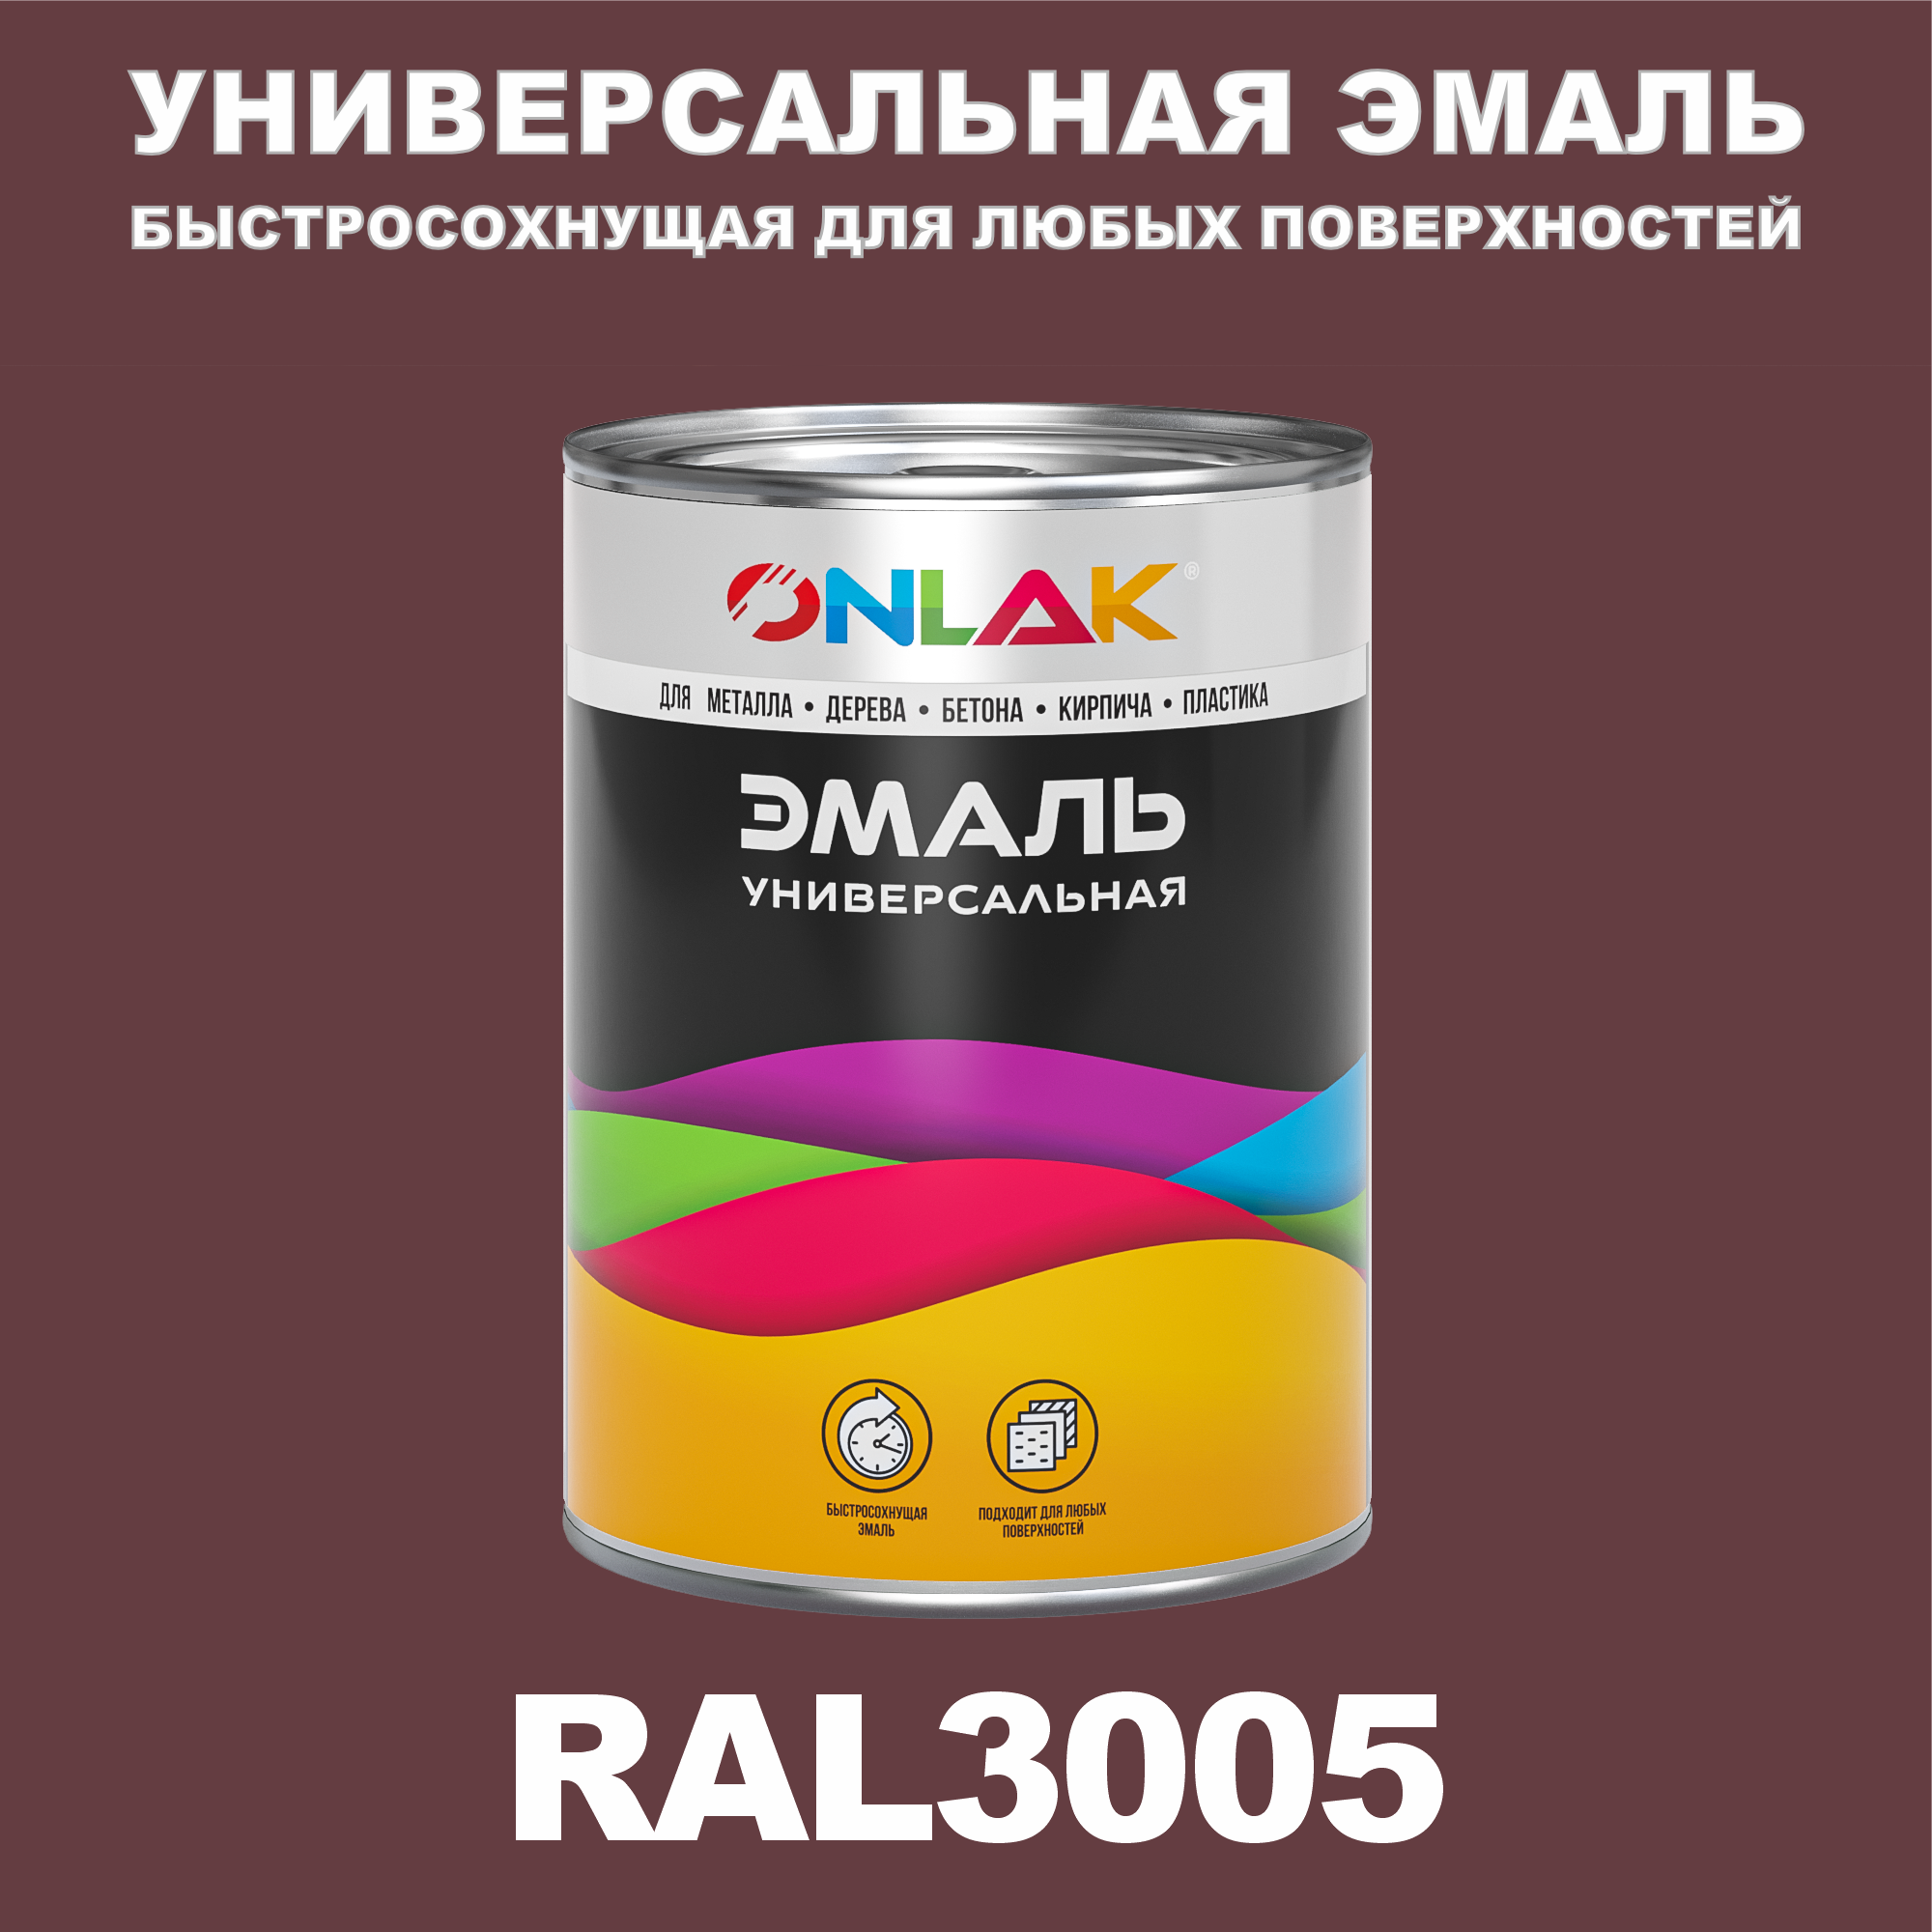 Эмаль ONLAK Универсальная RAL3005 по металлу по ржавчине для дерева бетона пластика напиток сокосодержащий santal красный сицилийский апельсин 1 литр